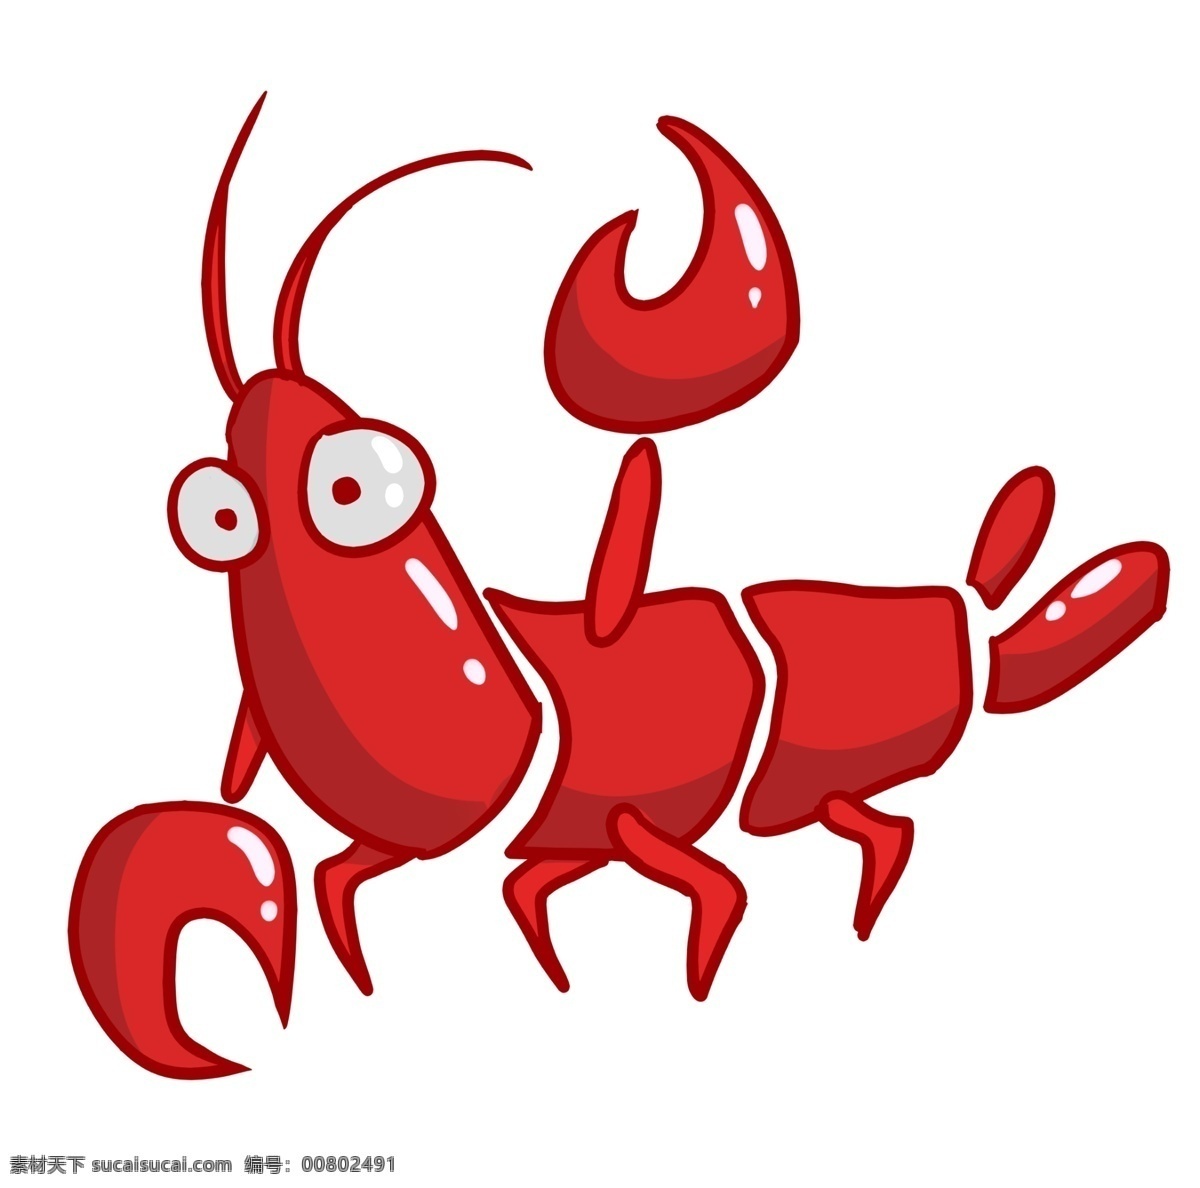 精美 龙虾 装饰 插画 精美龙虾 红色的龙虾 漂亮的龙虾 立体龙虾 卡通龙虾 龙虾装饰